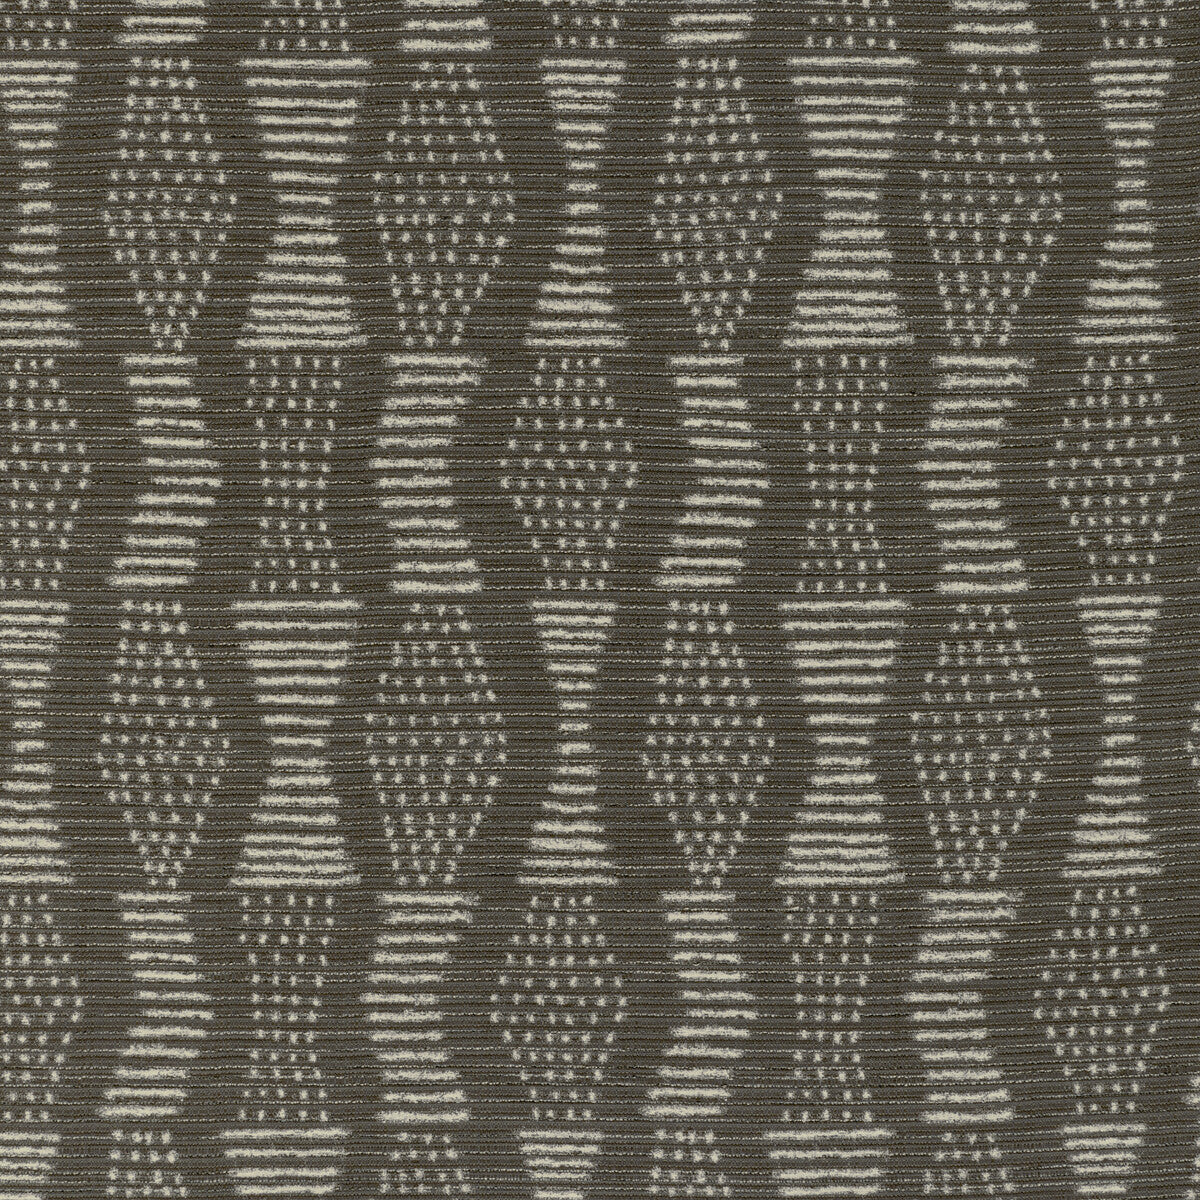 Kravet Design fabric in 36272-11 color - pattern 36272.11.0 - by Kravet Design